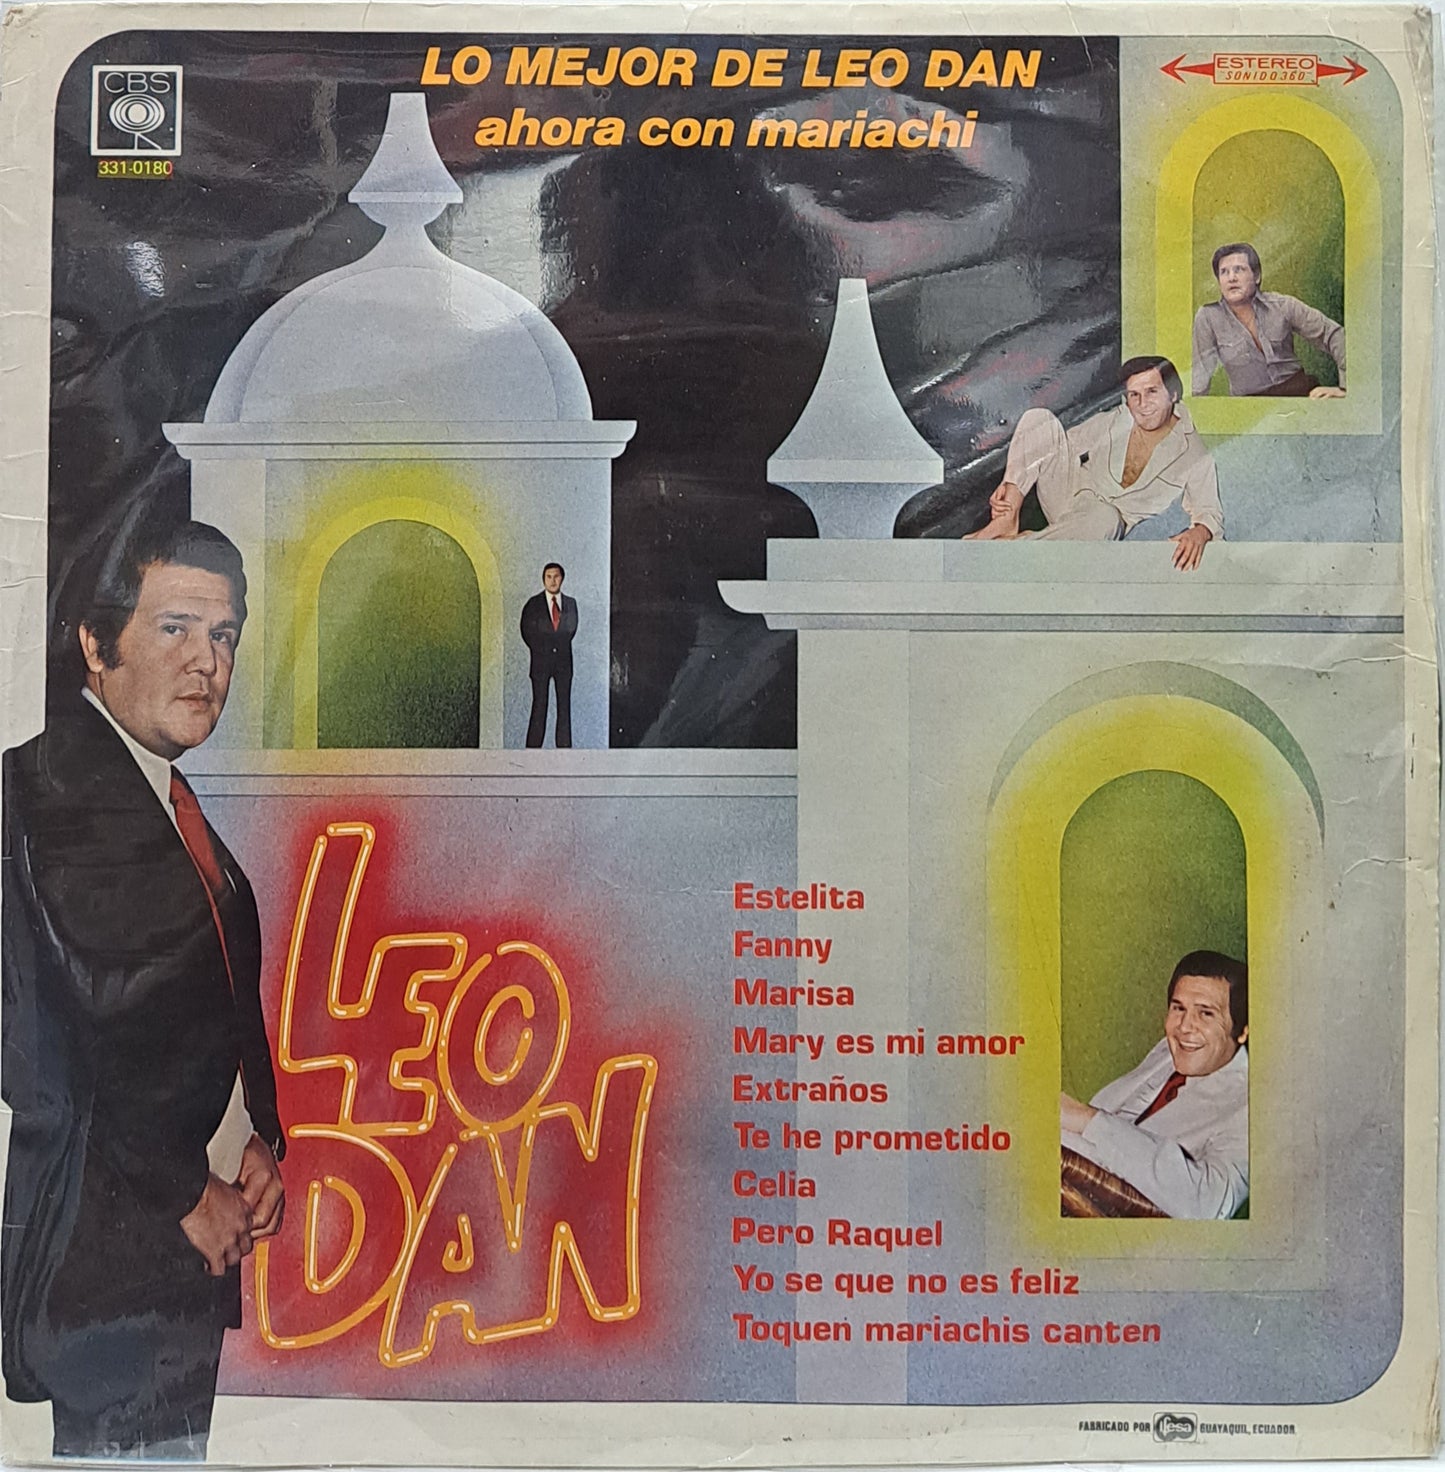 LEO DAN - LO MEJOR AHORA CON MARIACHI  LP